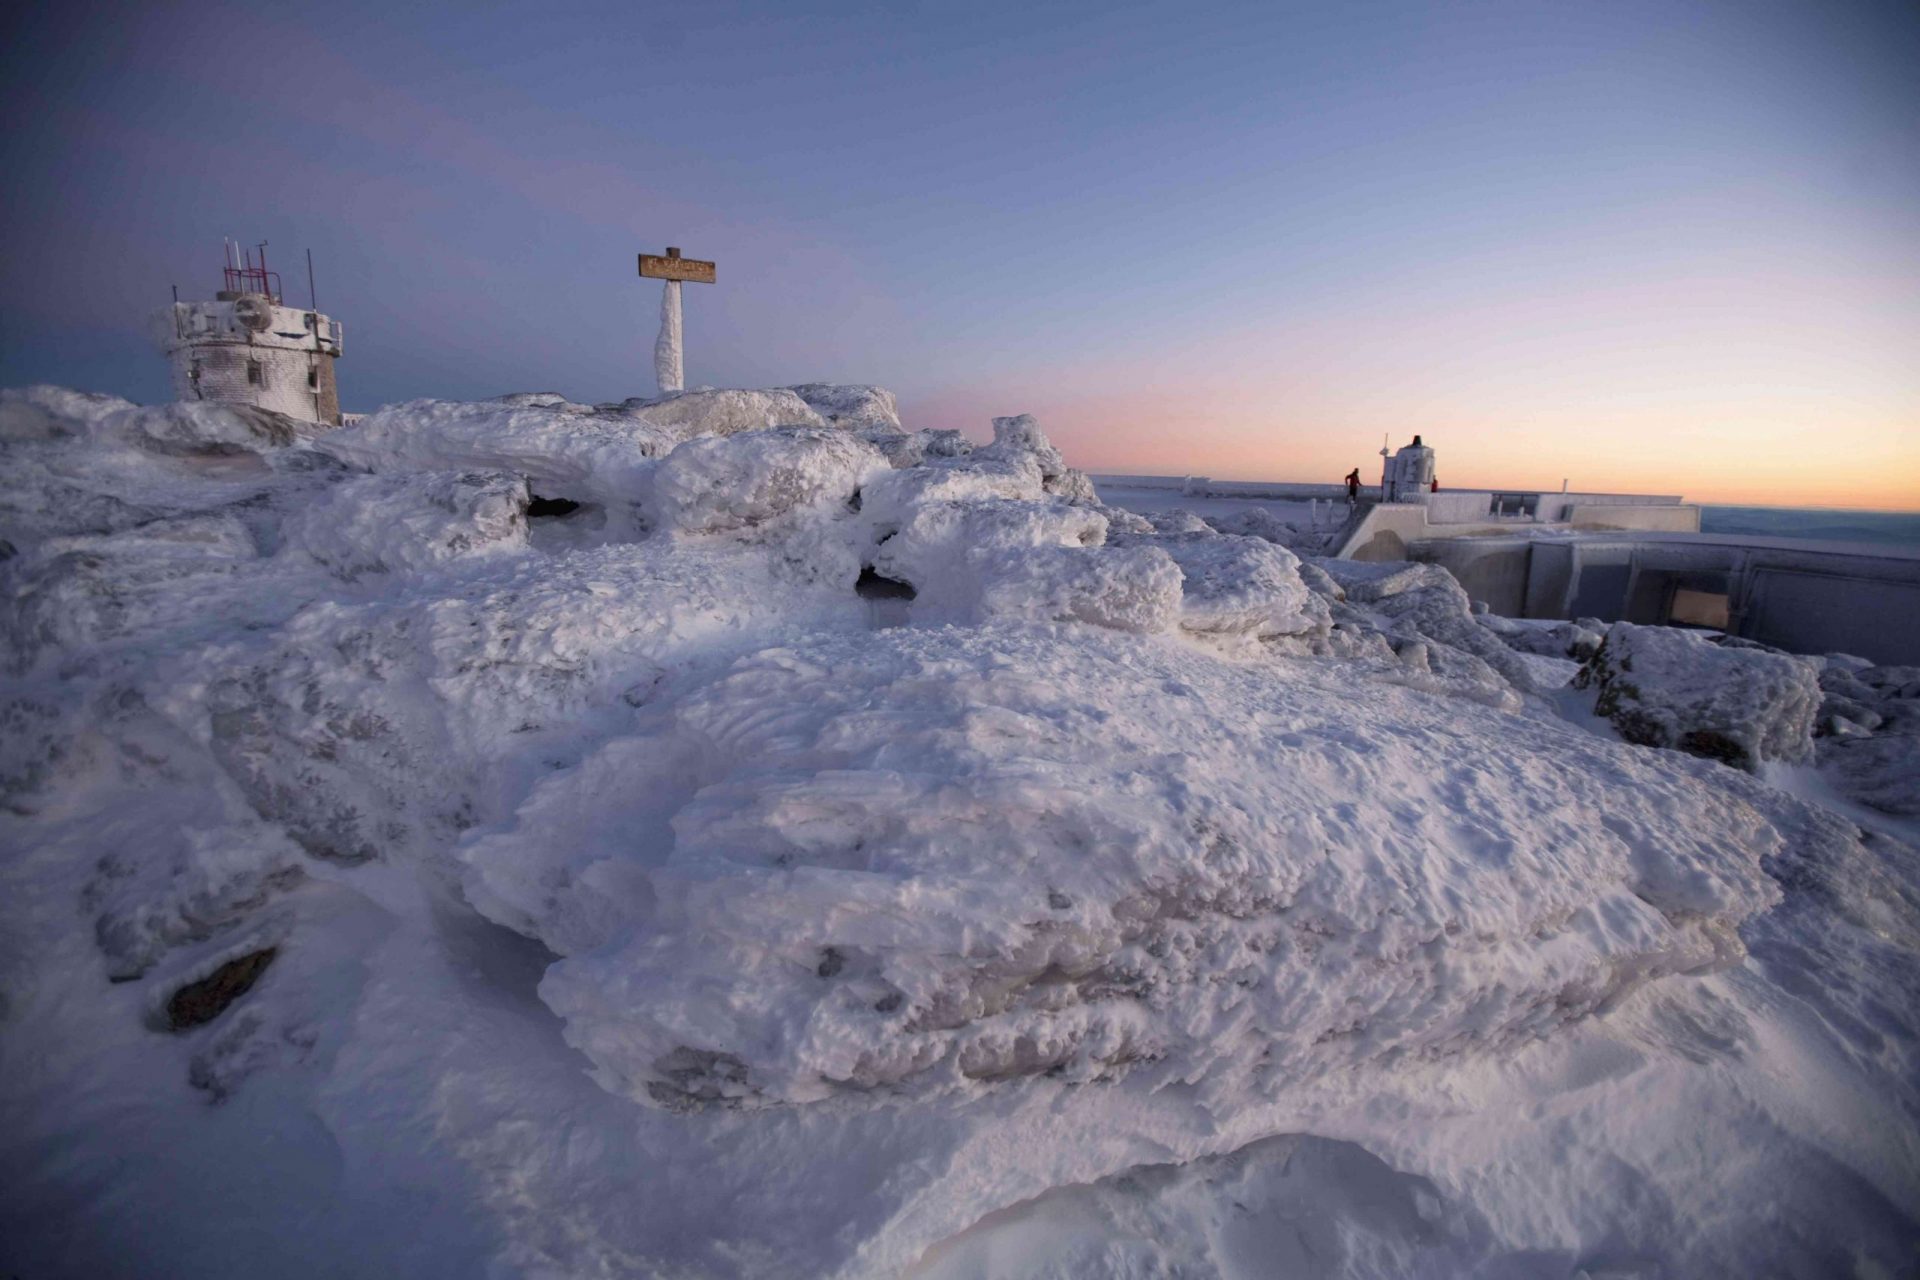 Amanecer en la cumbre del monte Washington, cubierto de nieve